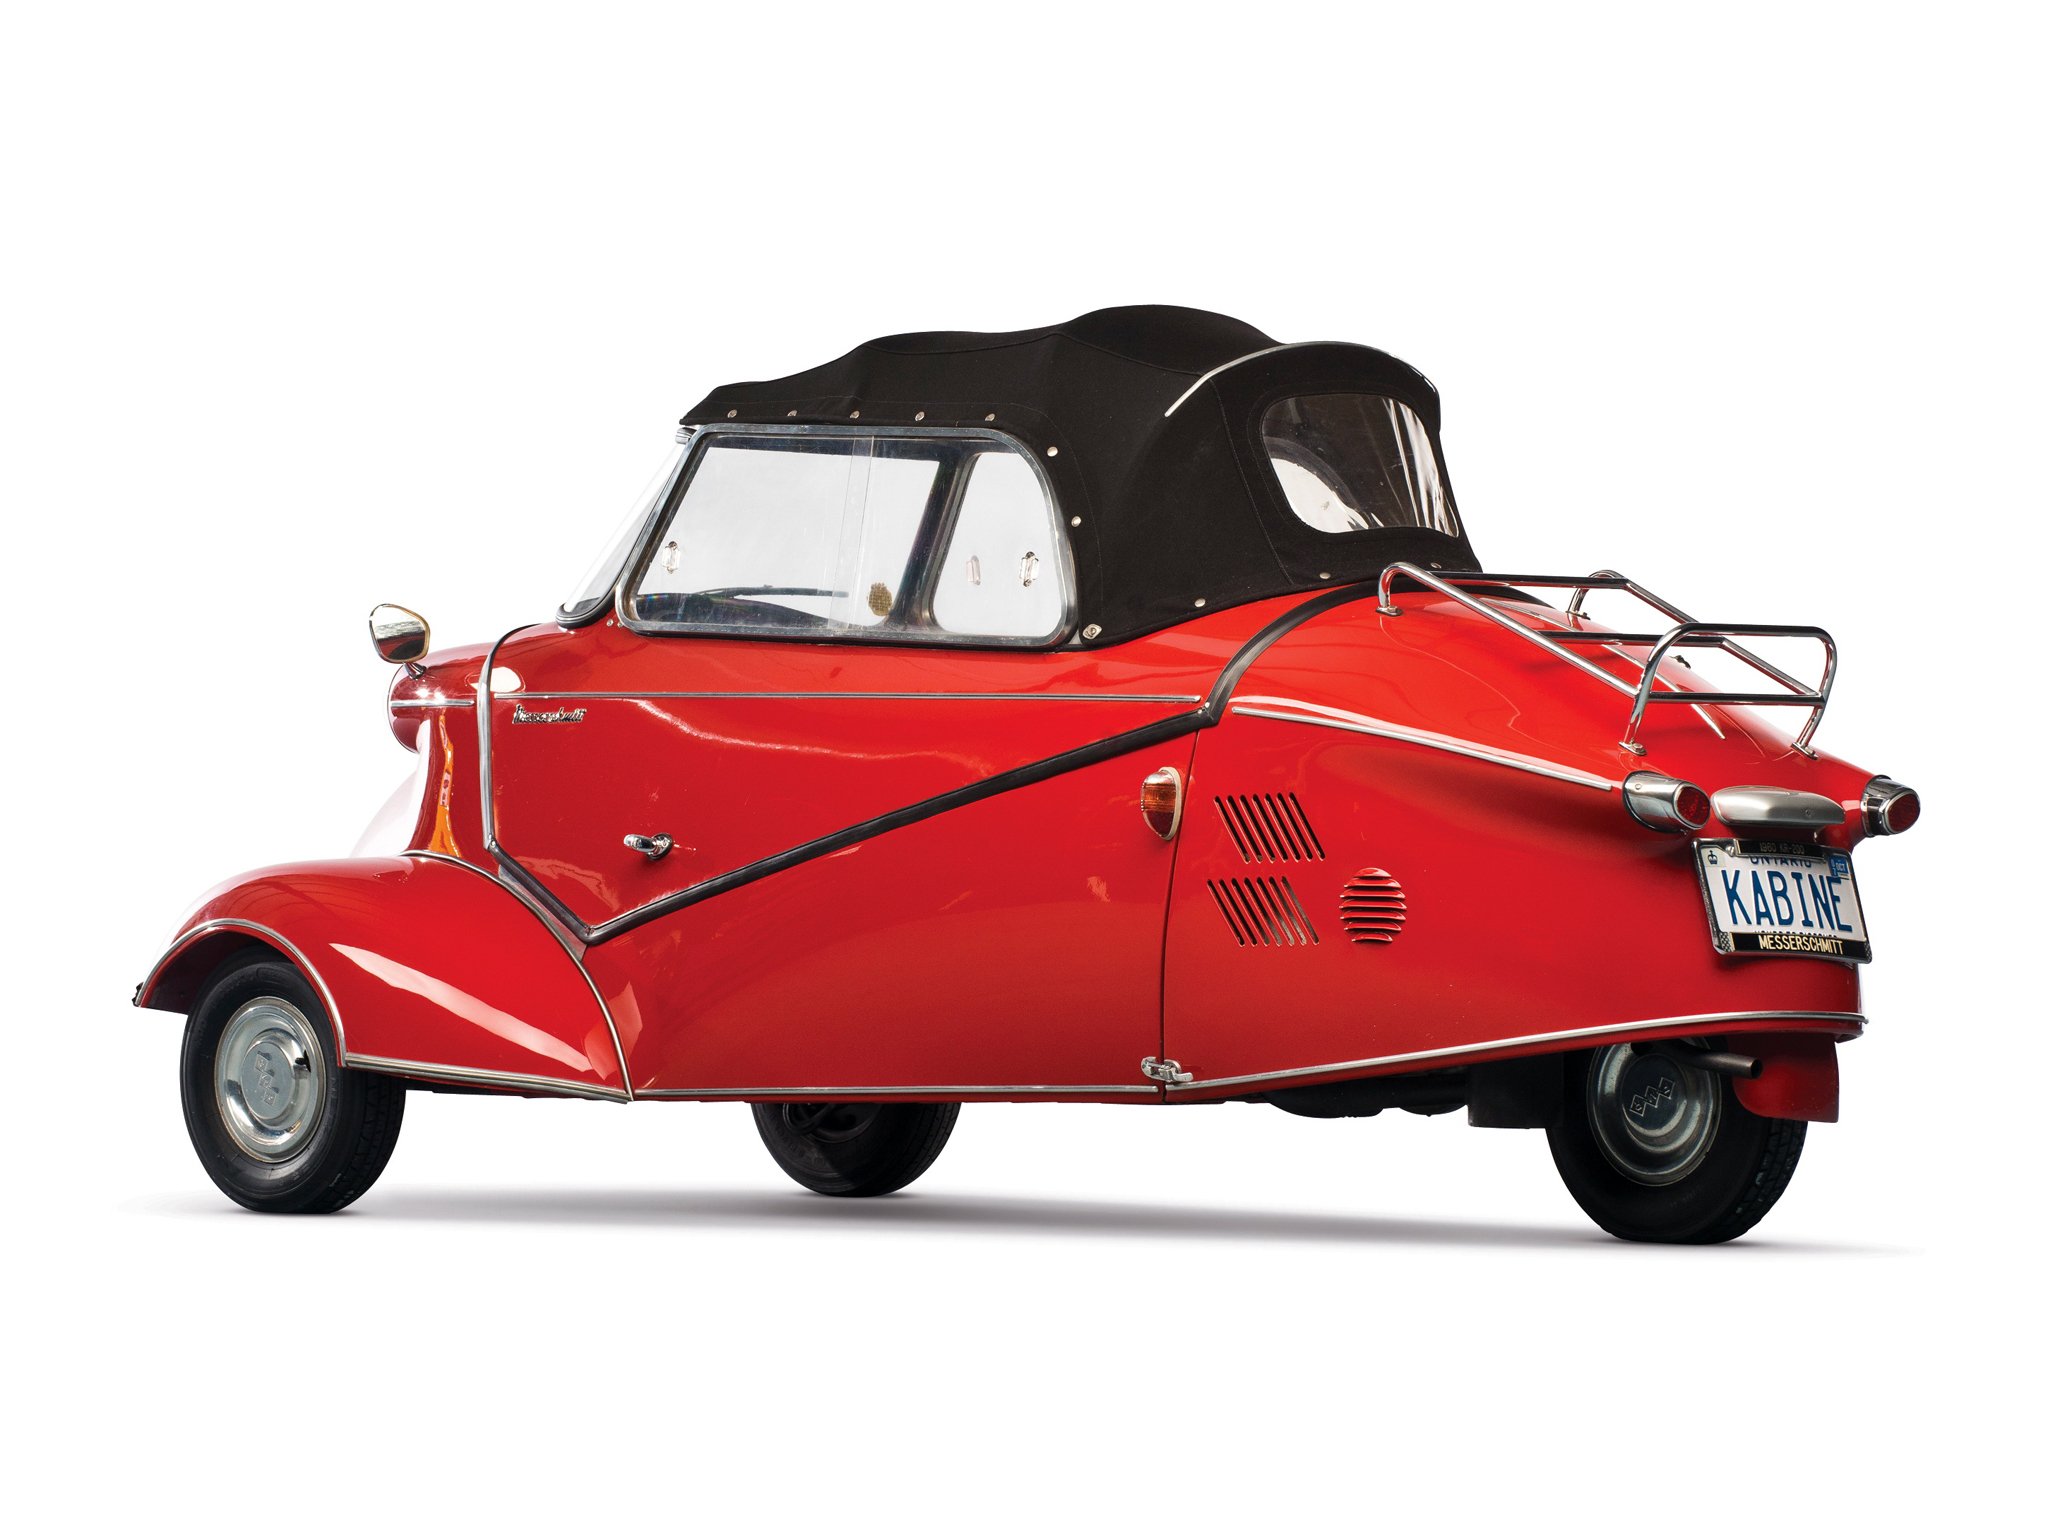 1952 64, Messerschmitt, Kr200, Cabriolet, Classic, Compact, Bike, Motorbike, Motorcycle Wallpaper